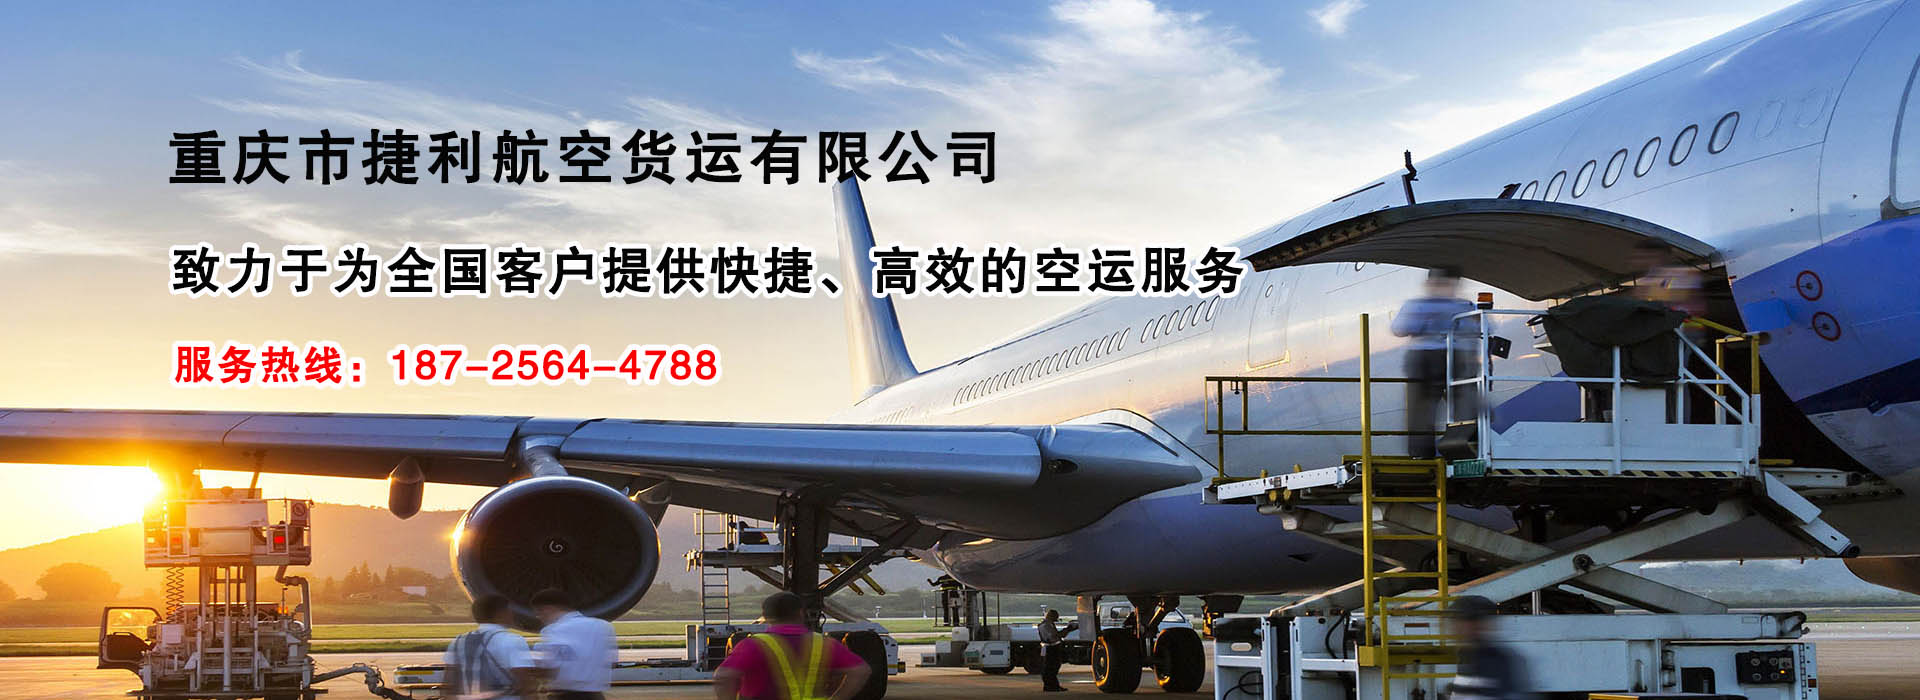 重庆捷利航空货运有限公司的联系方式-书生商务网